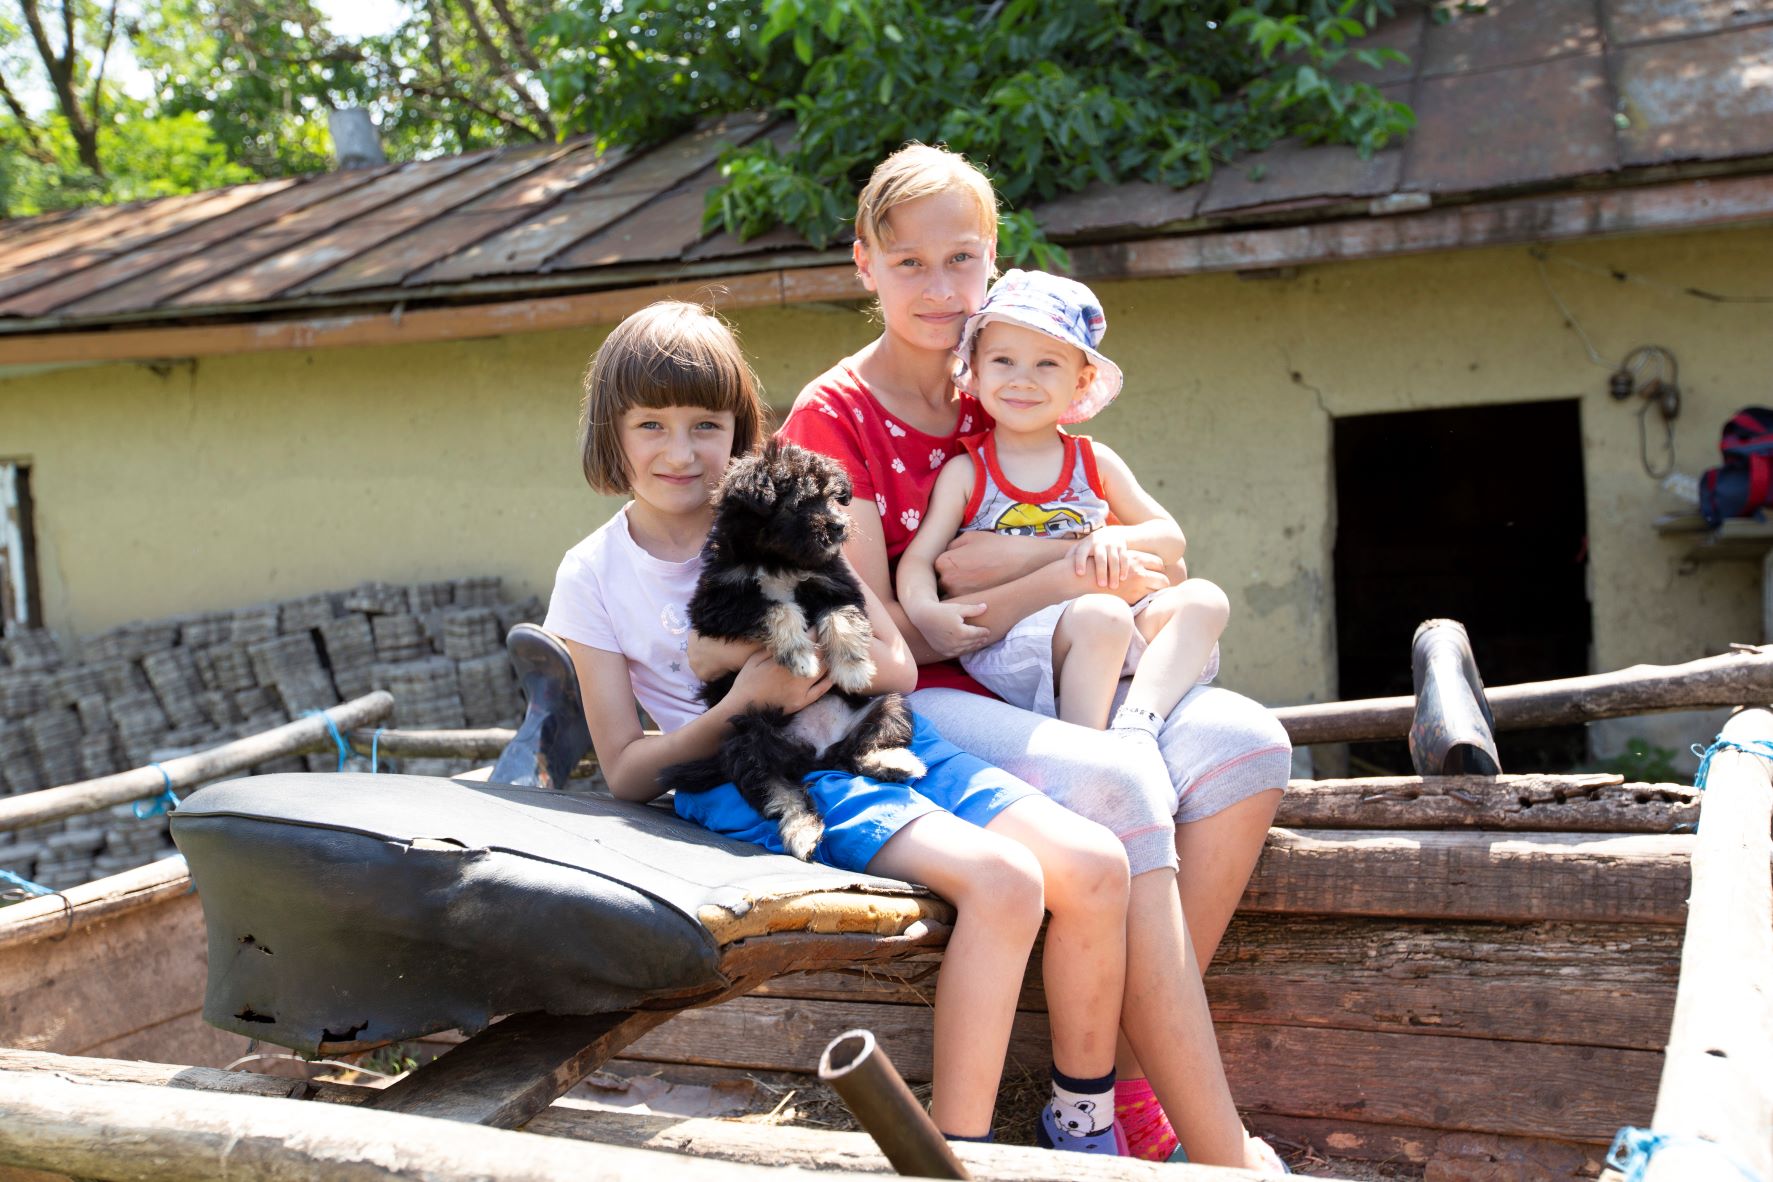 Children in Moldova sitting in a cart